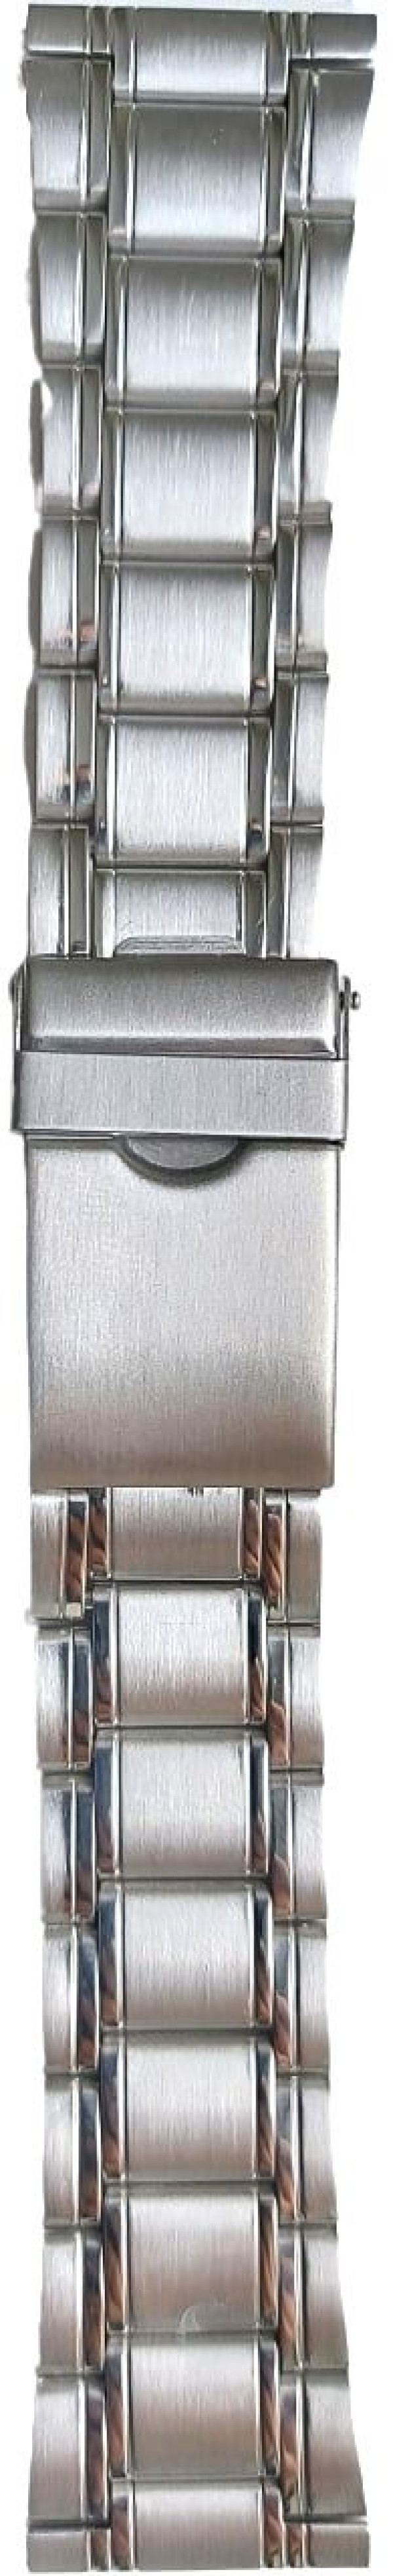 Metalni kaiš - MK24.04 Srebrni 24mm